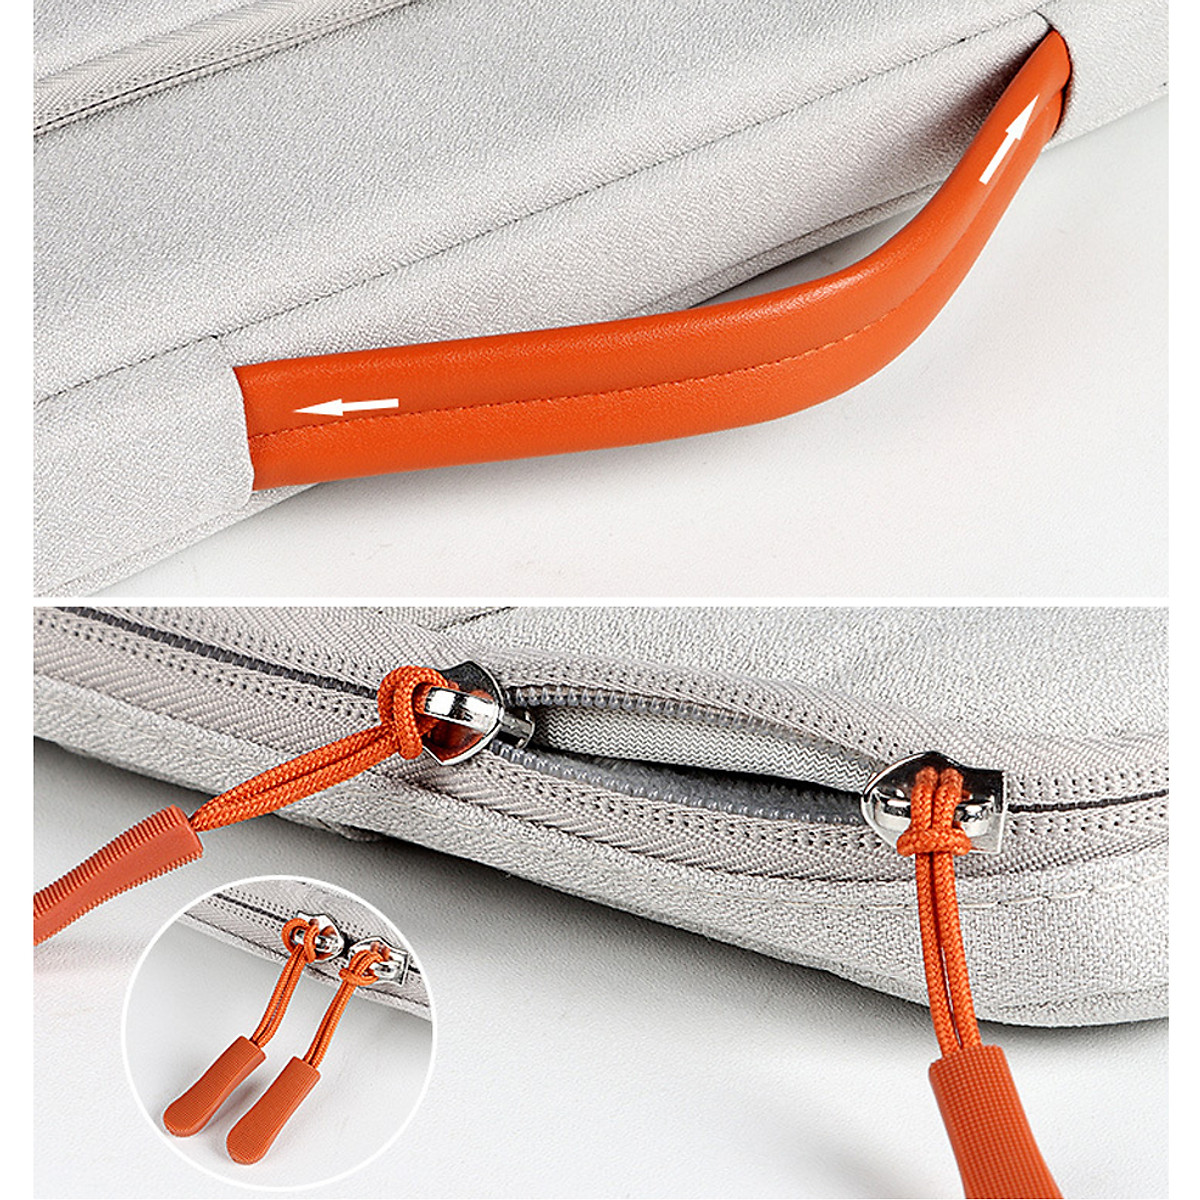 Túi xách - túi chống sốc cho laptop 14.1 INCH cao cấp phong cách mới - 0126